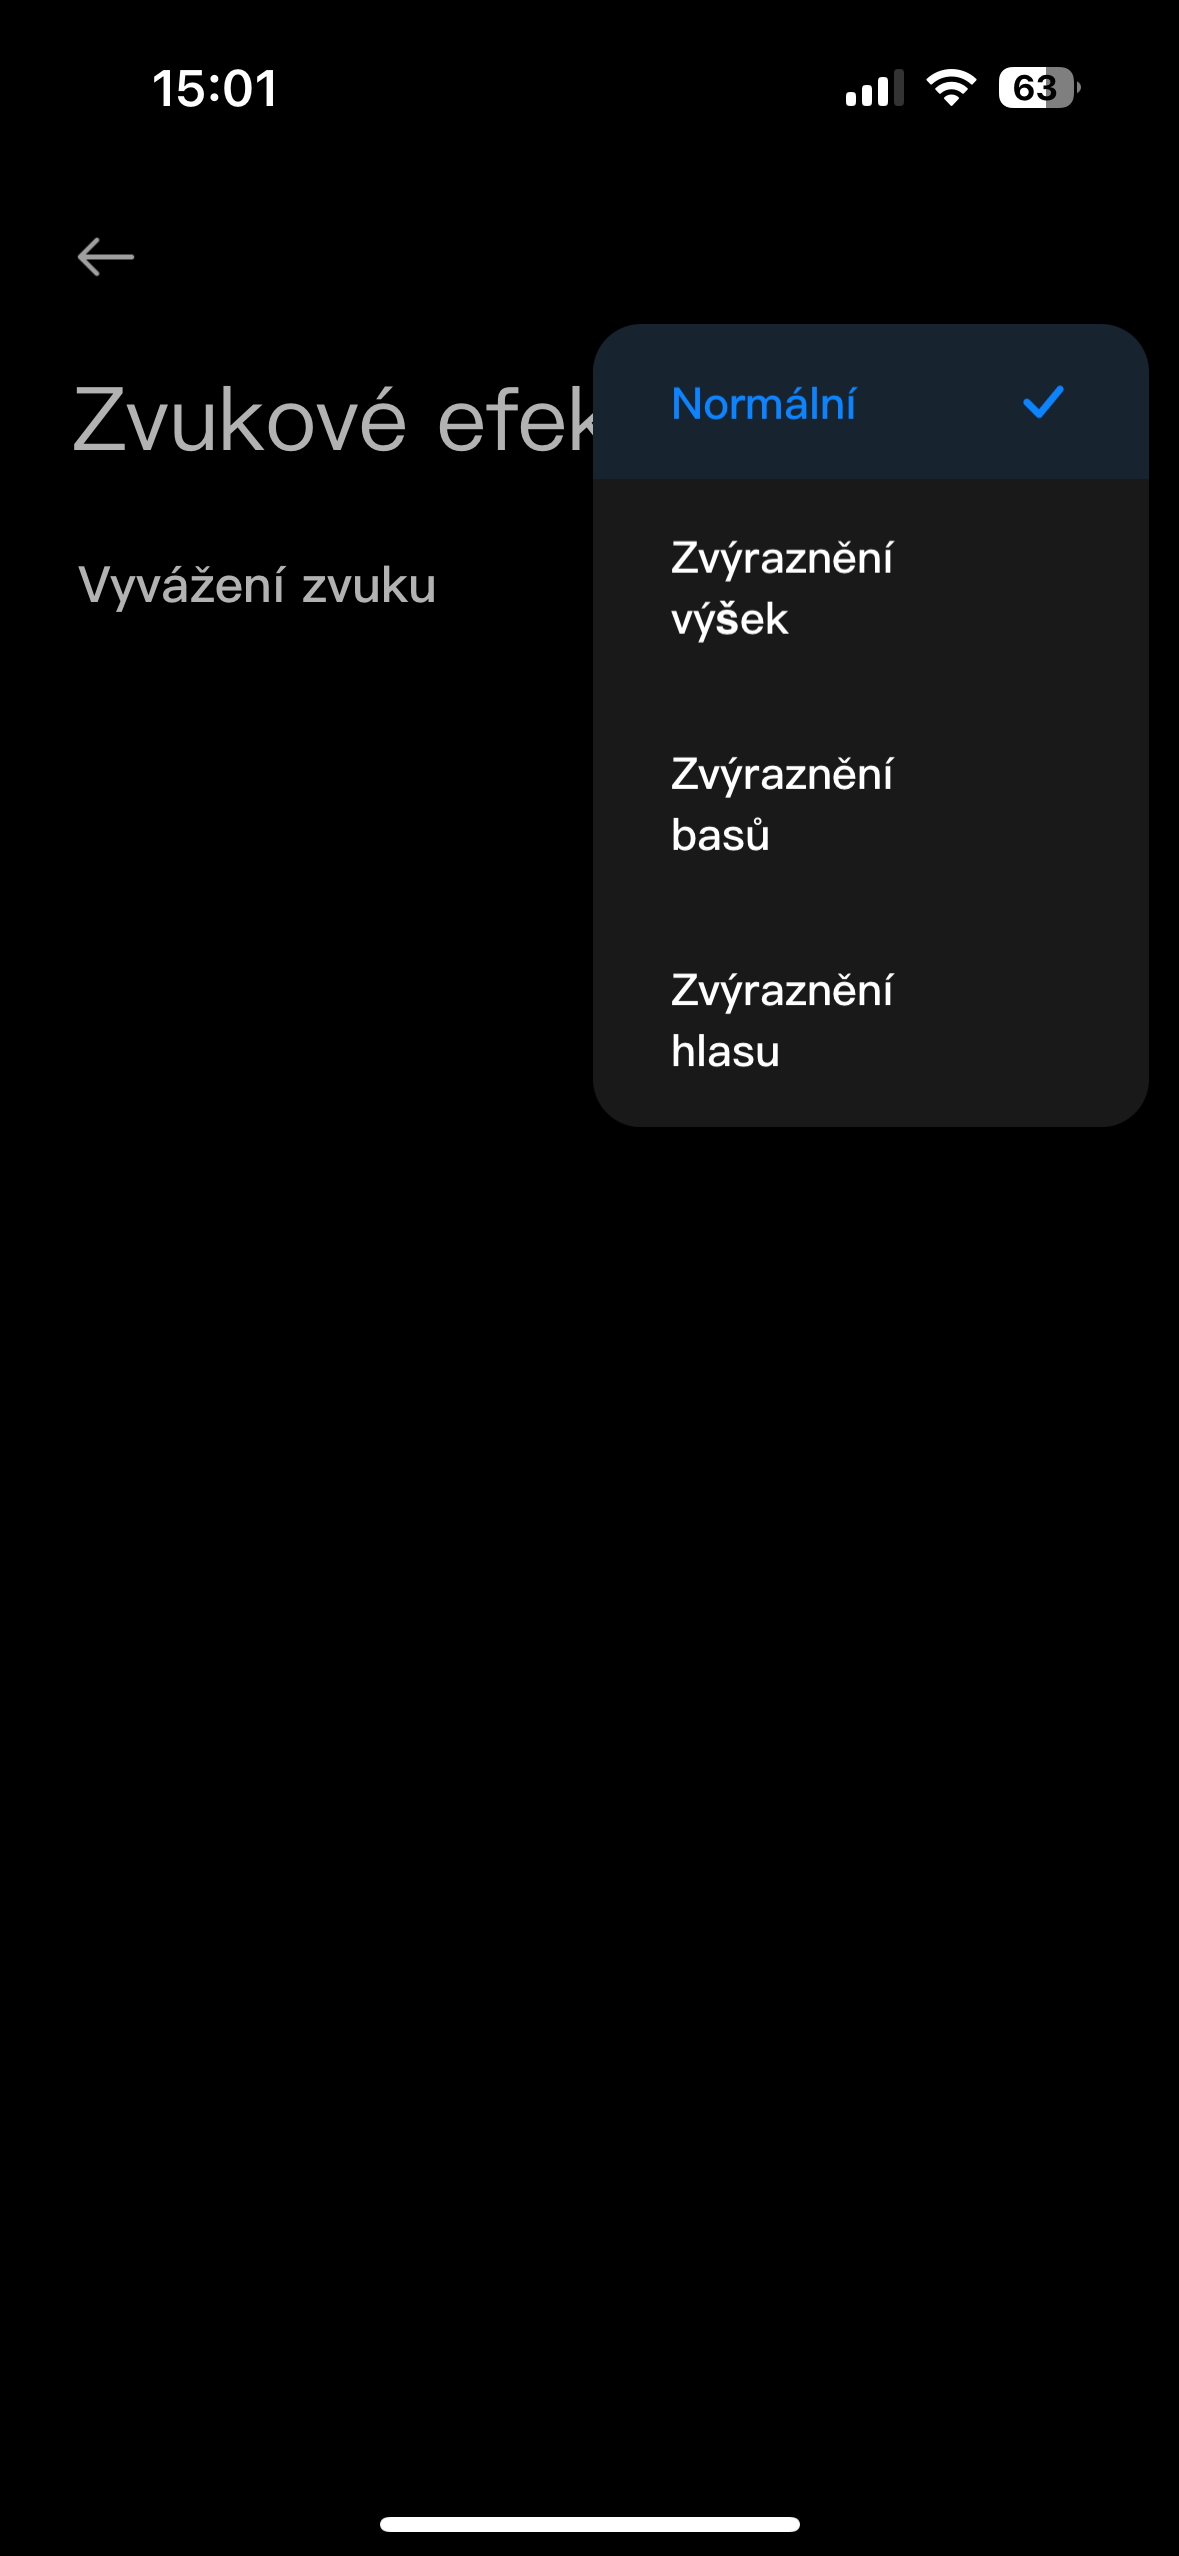 Xiaomi Redmi Buds 5